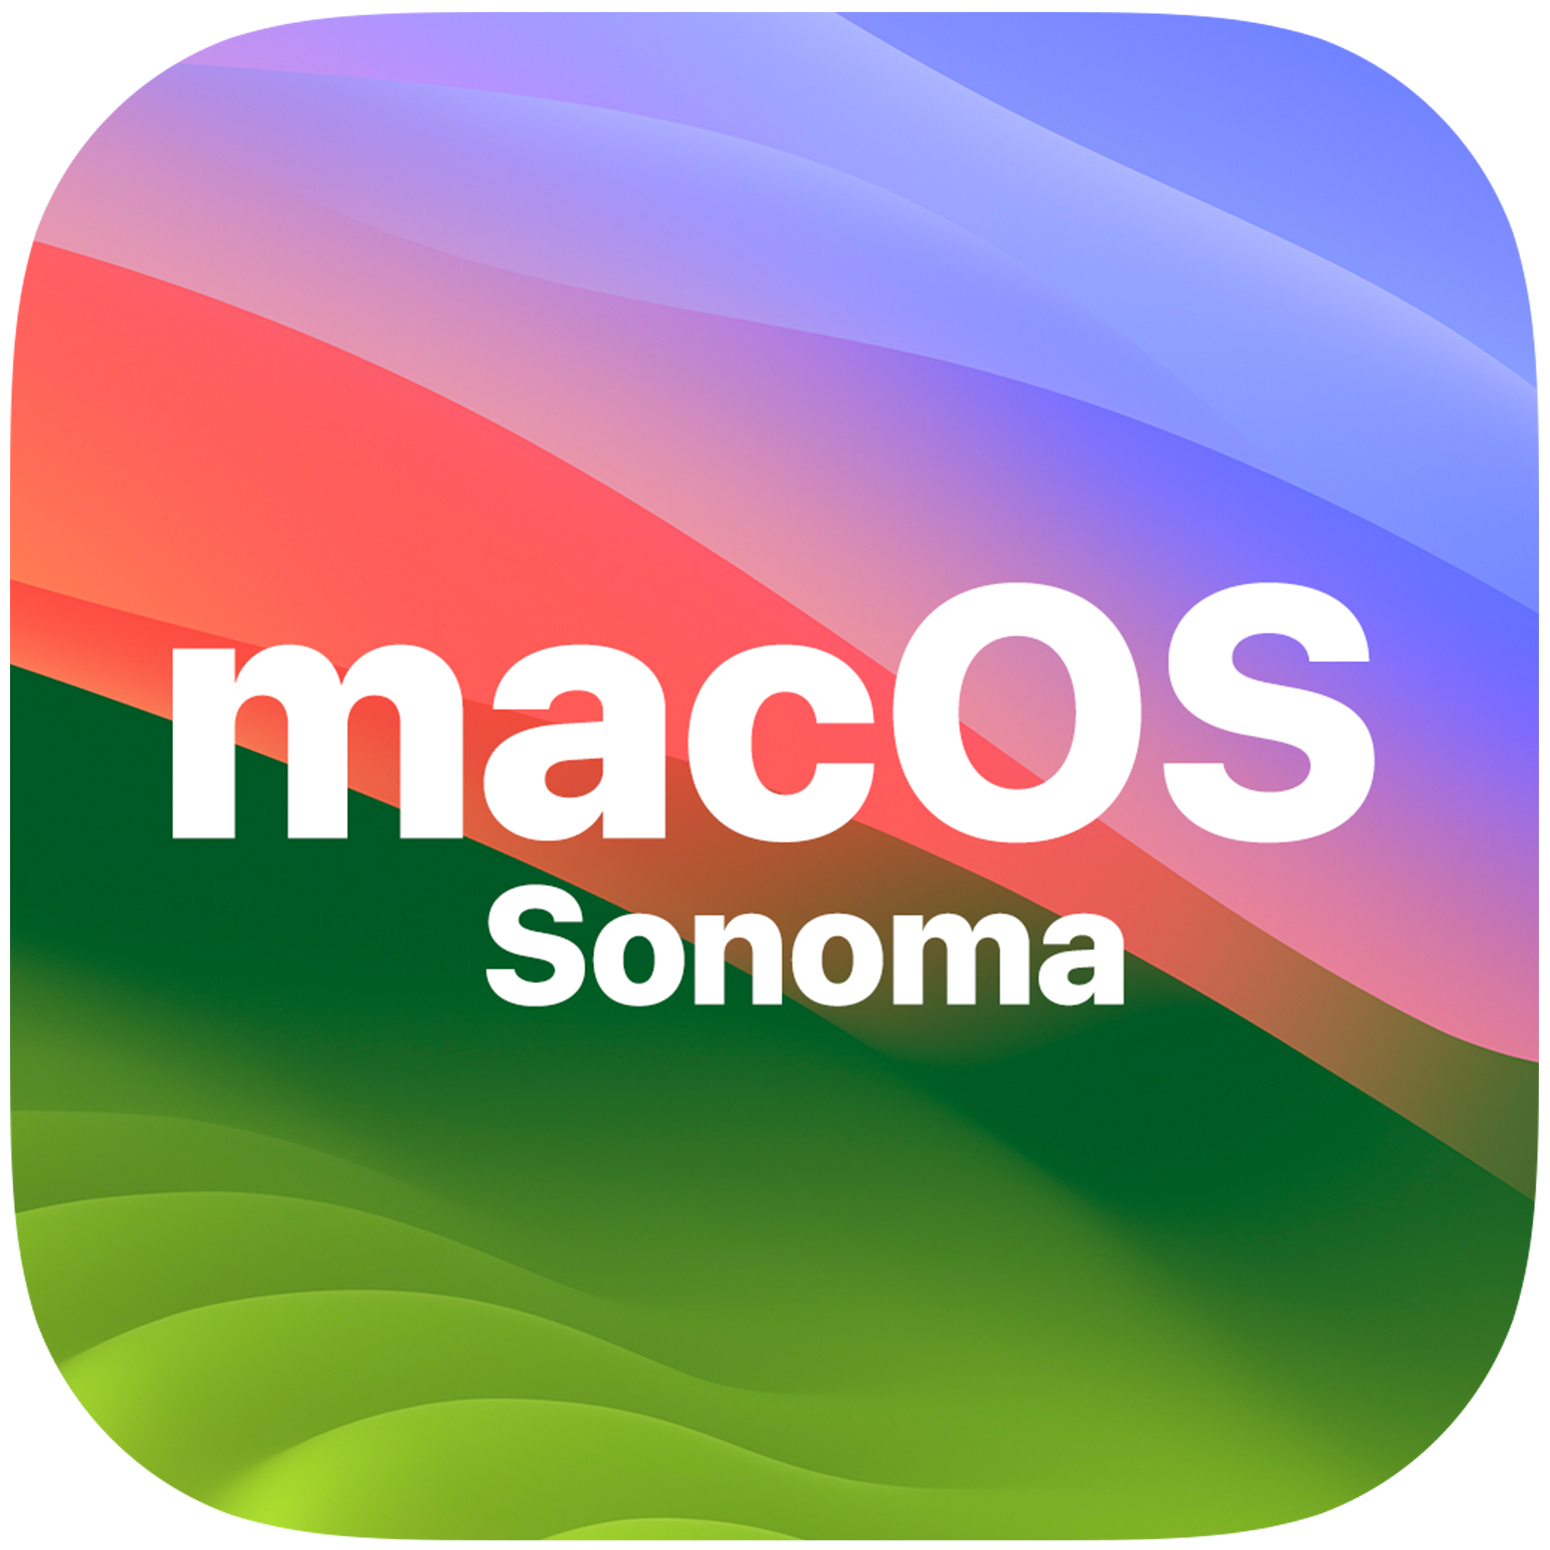 macOS Sonoma 14.4.1 nu beschikbaar voor Mac